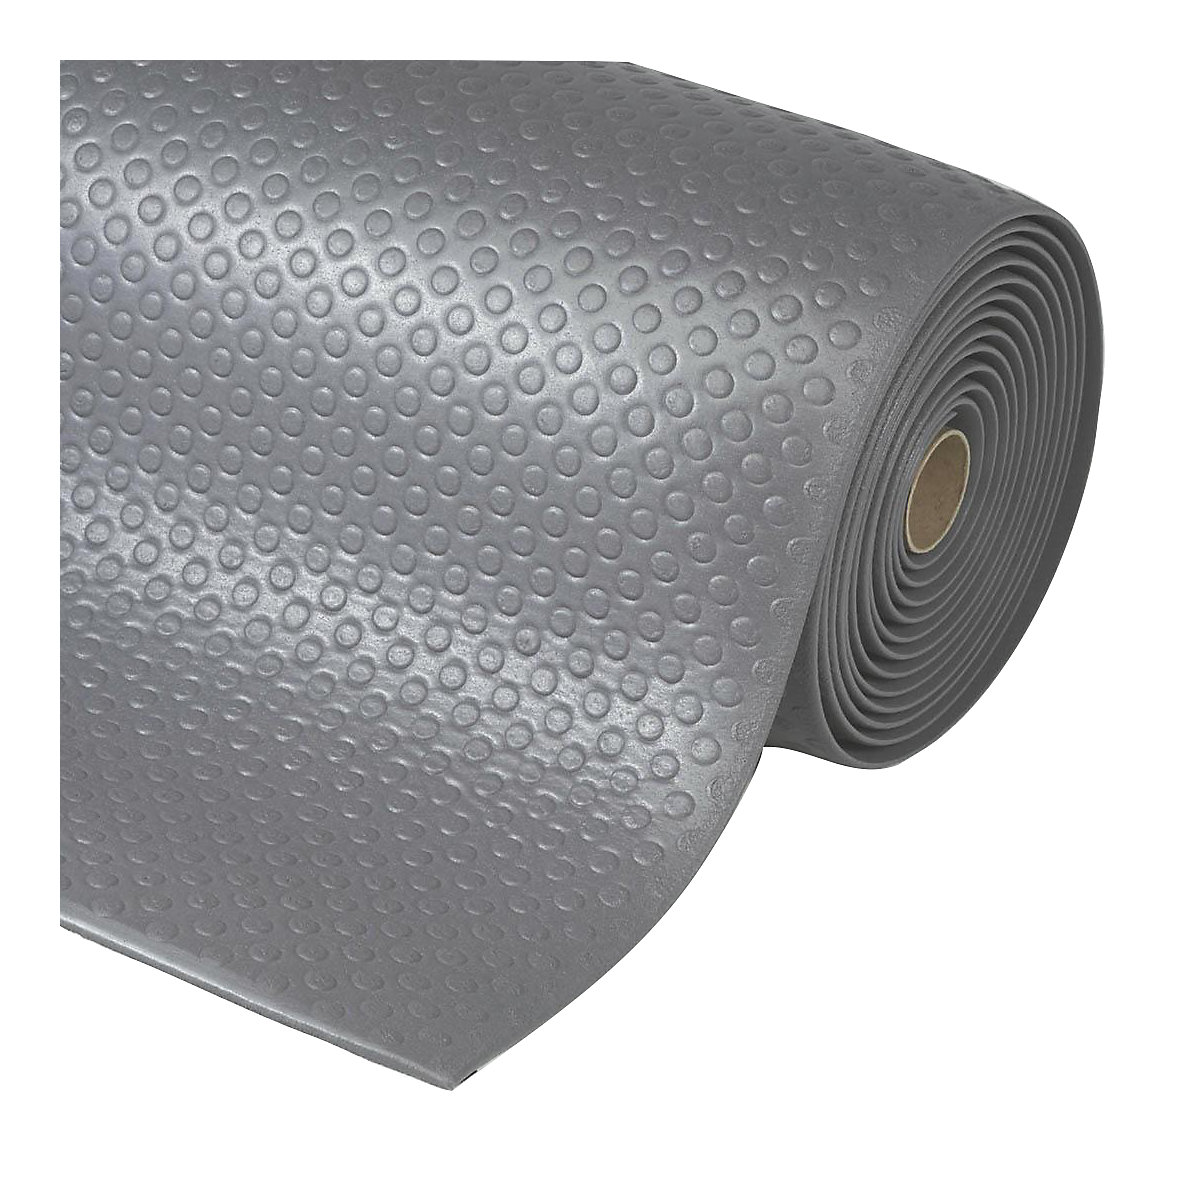 Tapis anti-fatigue Bubble Sof-Tred™ – NOTRAX, prix au m, en mousse de vinyle, gris, largeur 1220 mm-5